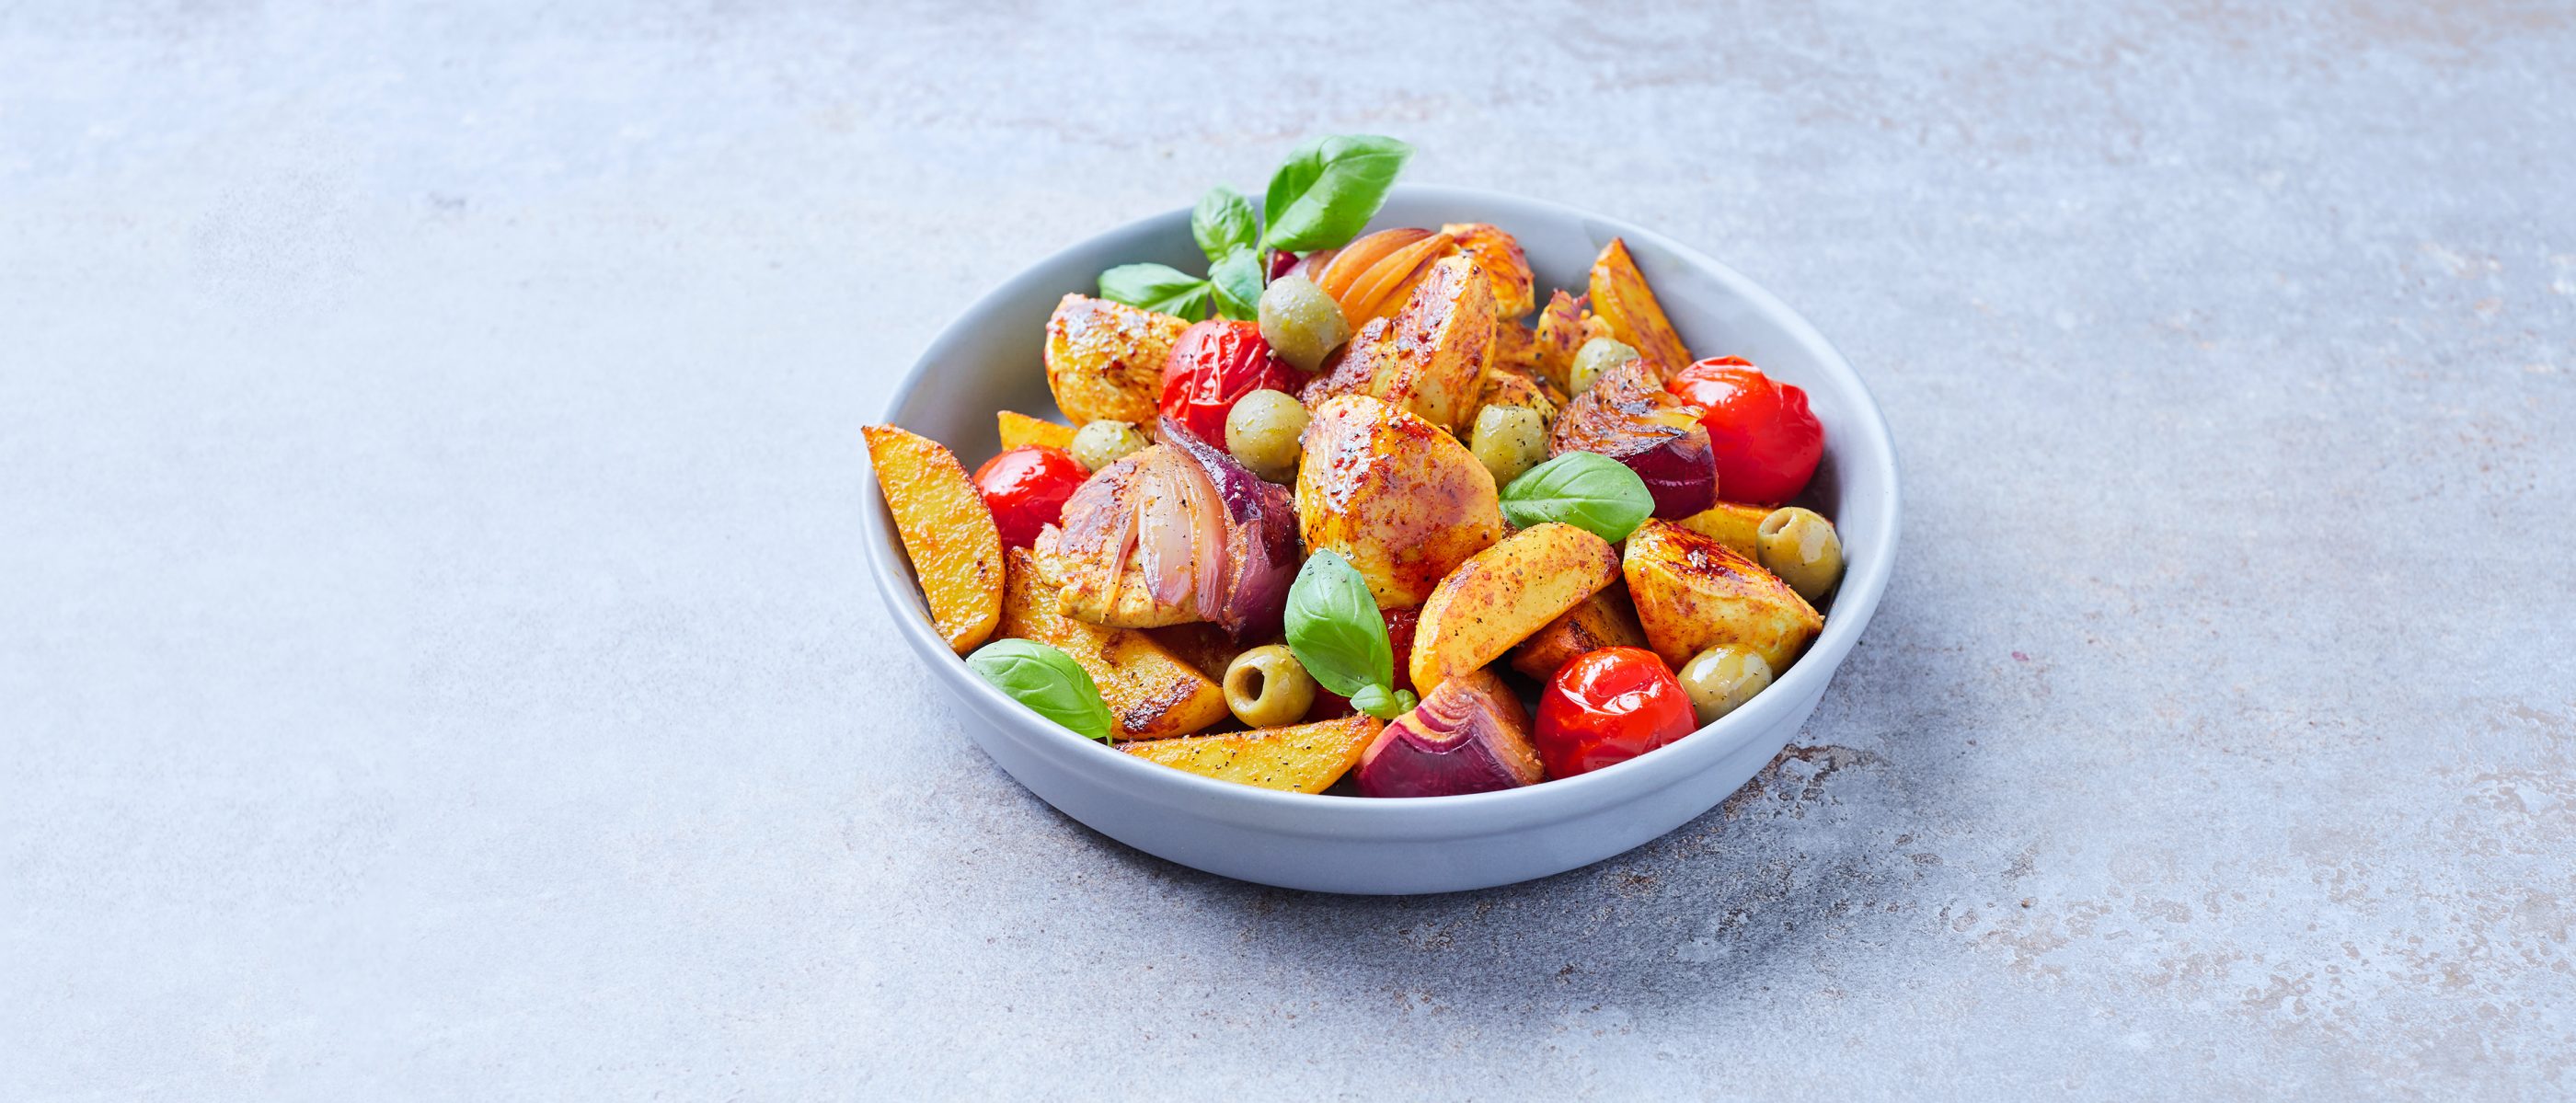 Ofen-Hähnchenbrust mit Kartoffeln, Tomaten und Zwiebeln – Rezepte von ...